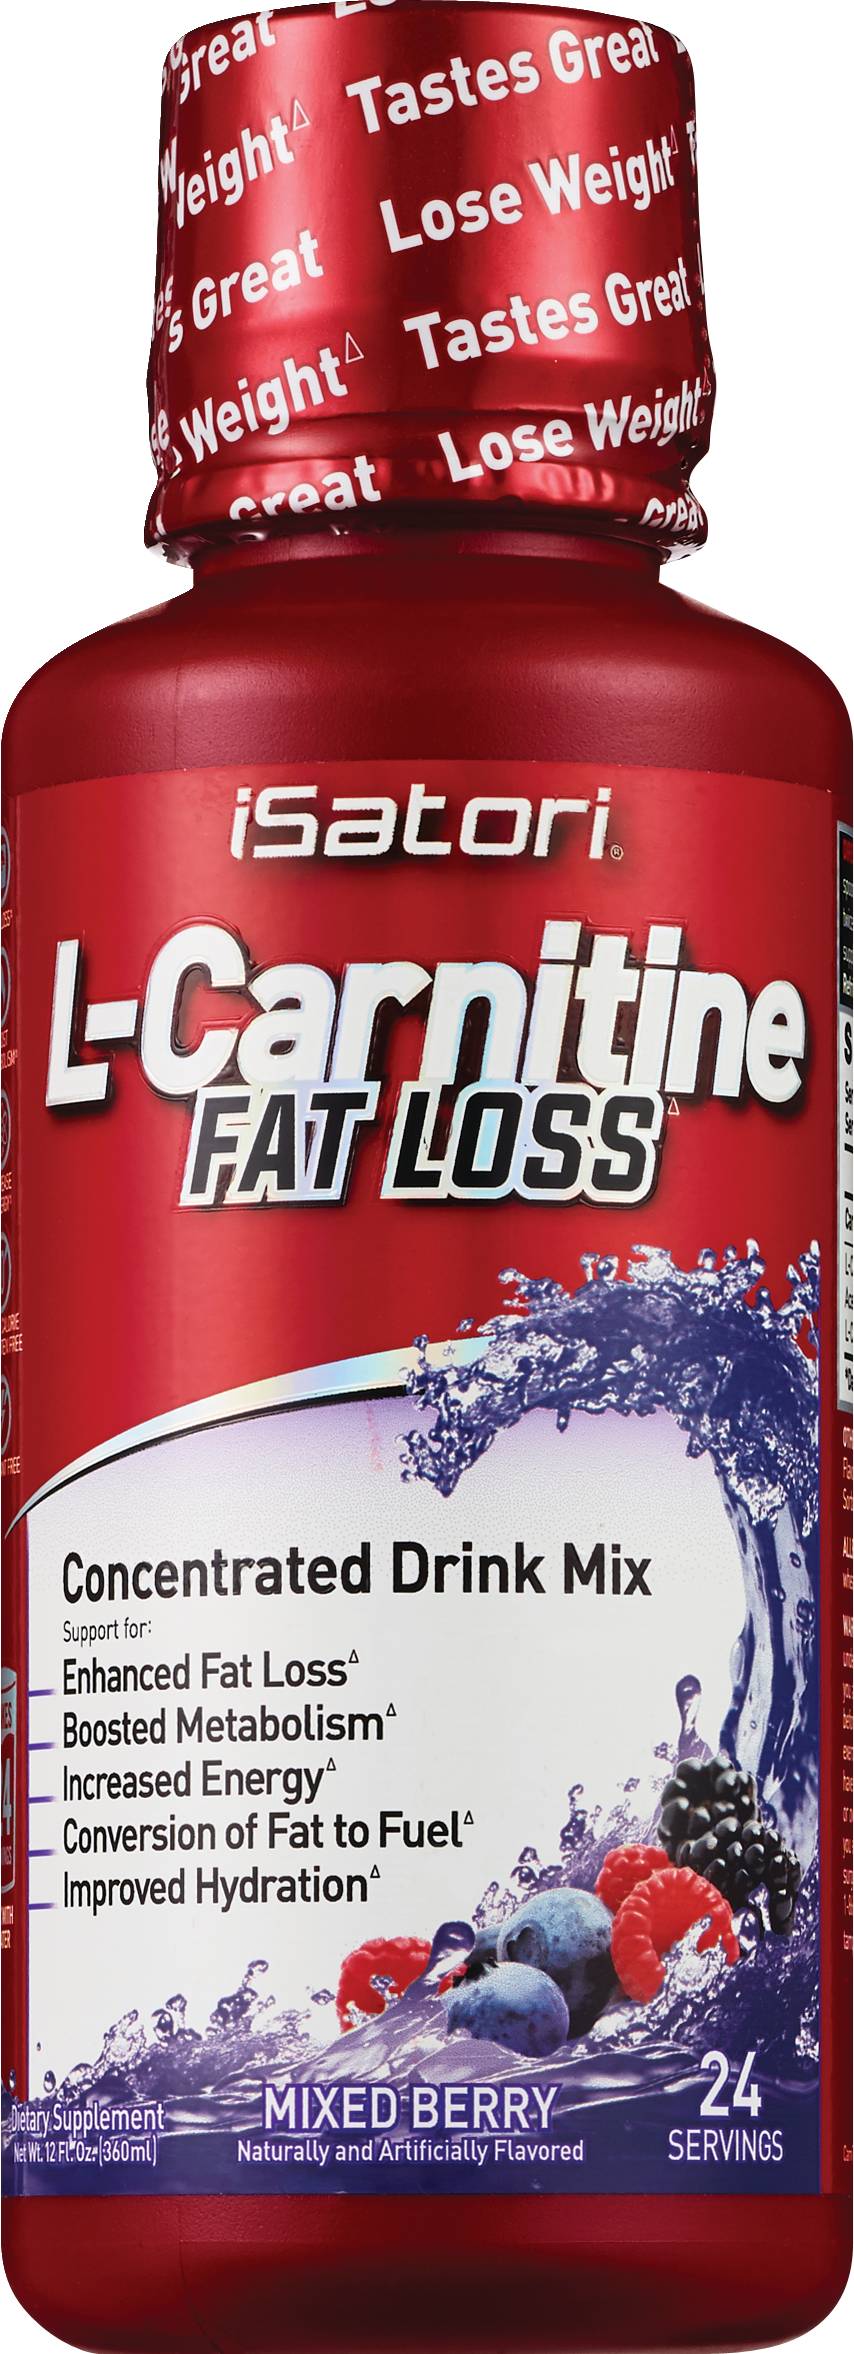 Isatori L Carnitine Fat Loss Drink Mix (12 fl oz) (mixed berry)